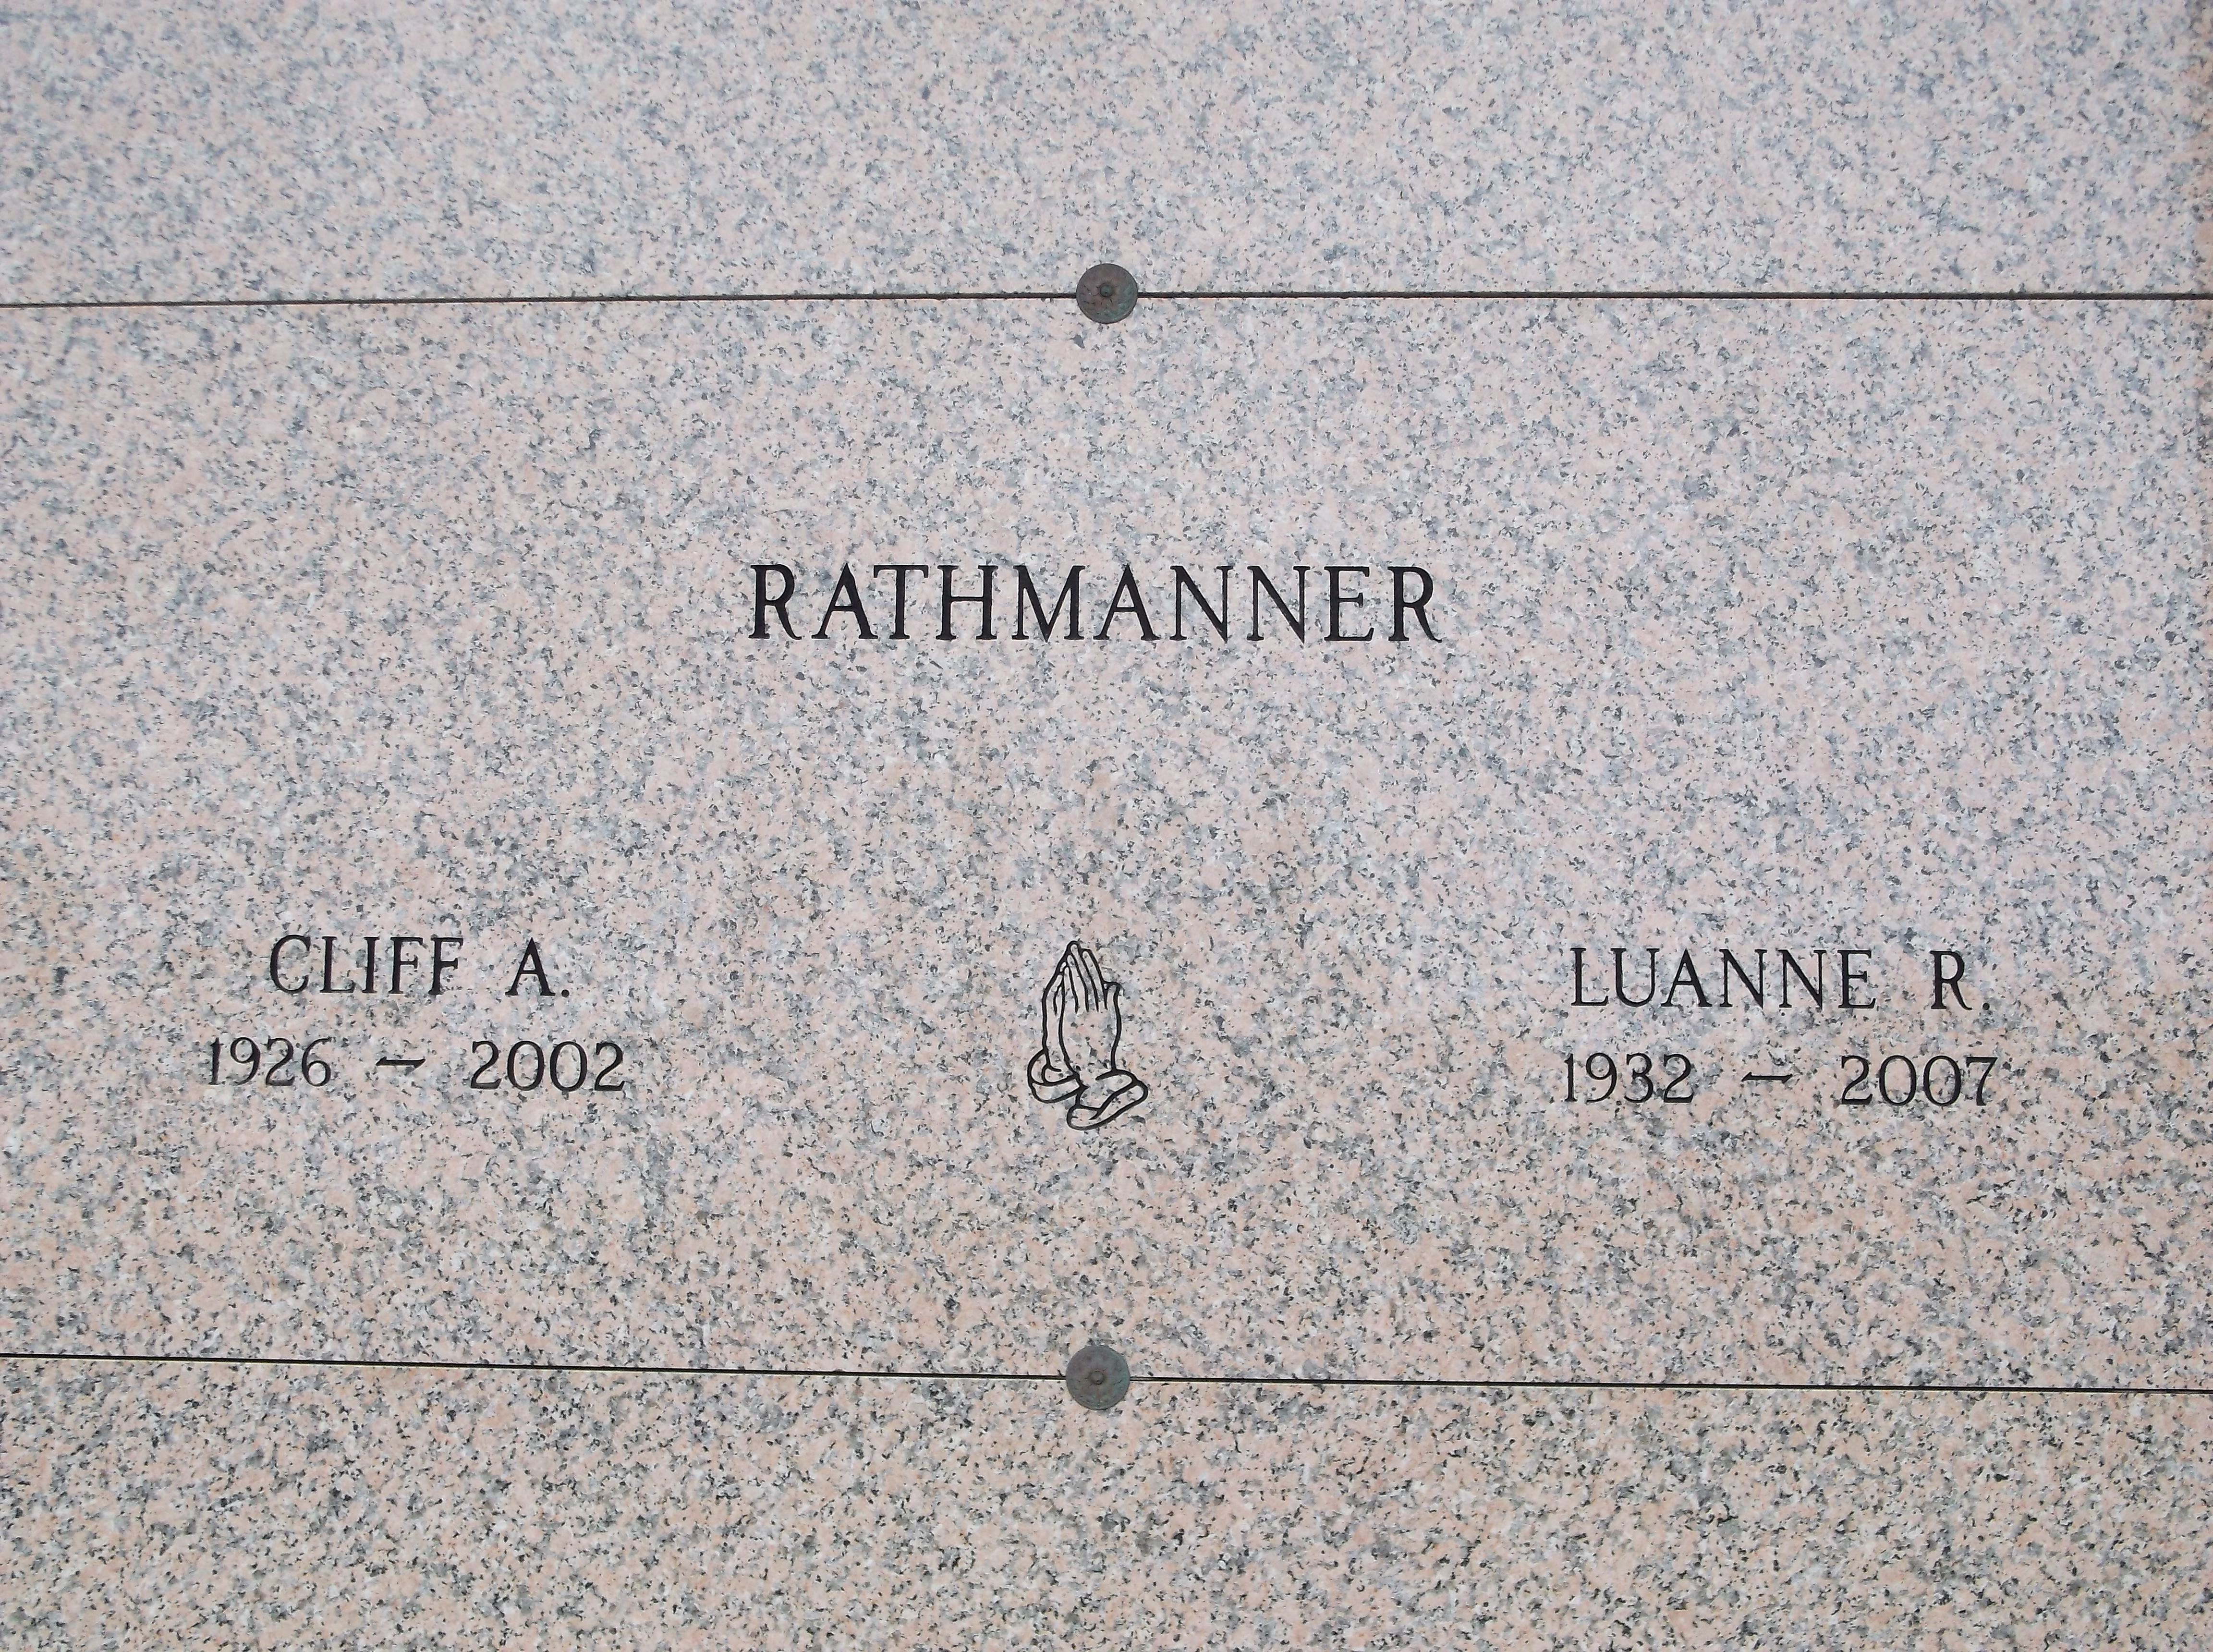 Luanne R Rathmanner